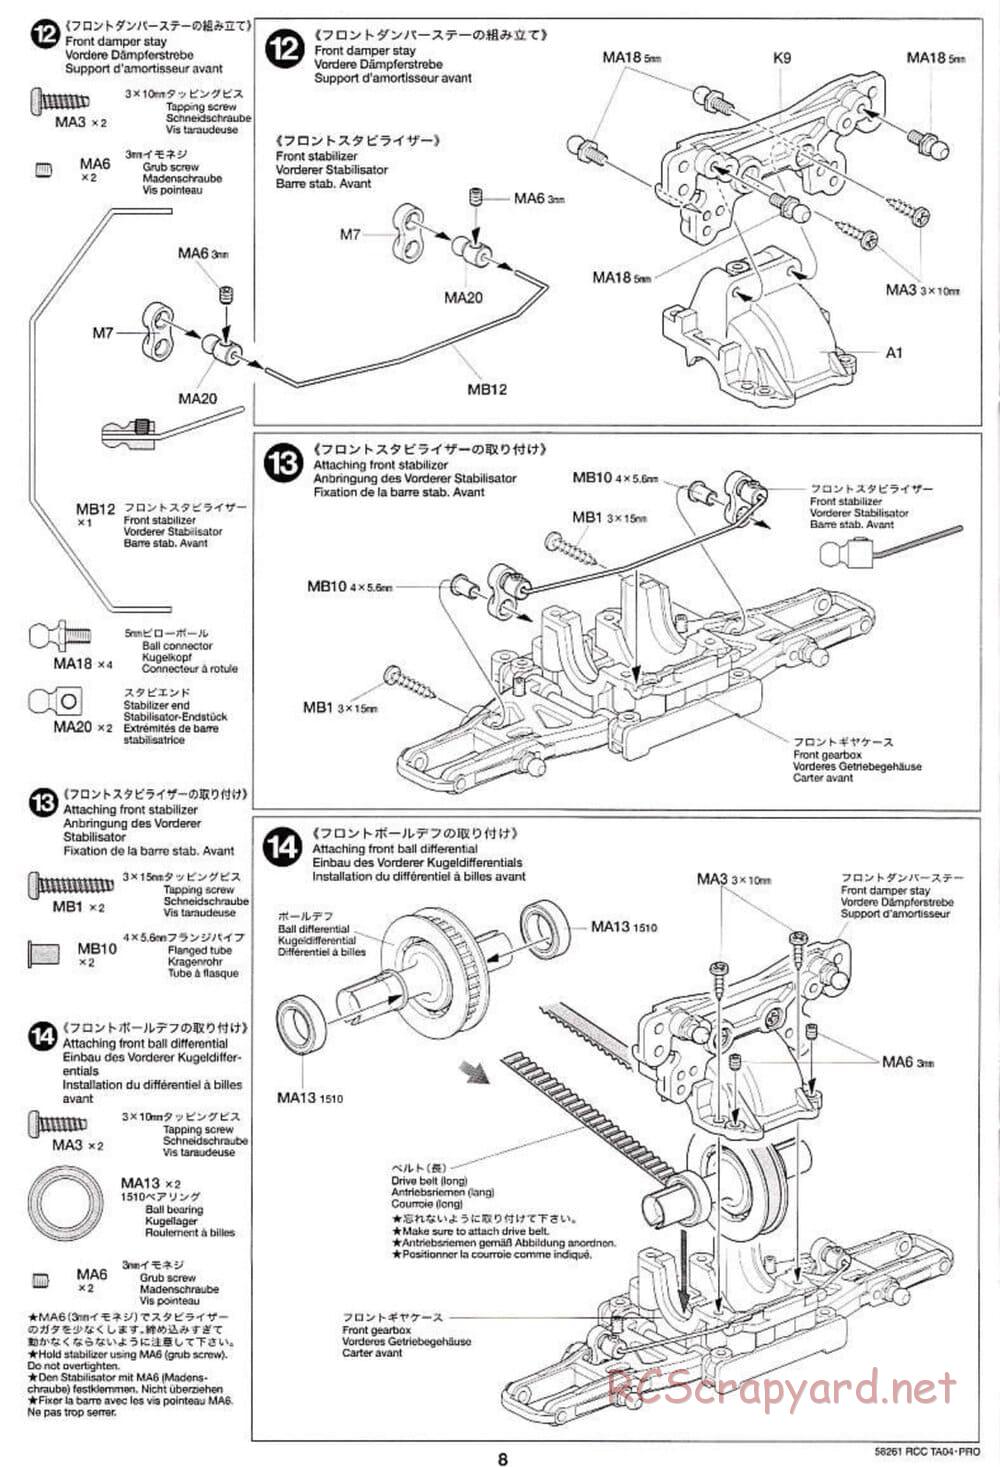 Tamiya - TA-04 Pro Chassis - Manual - Page 8